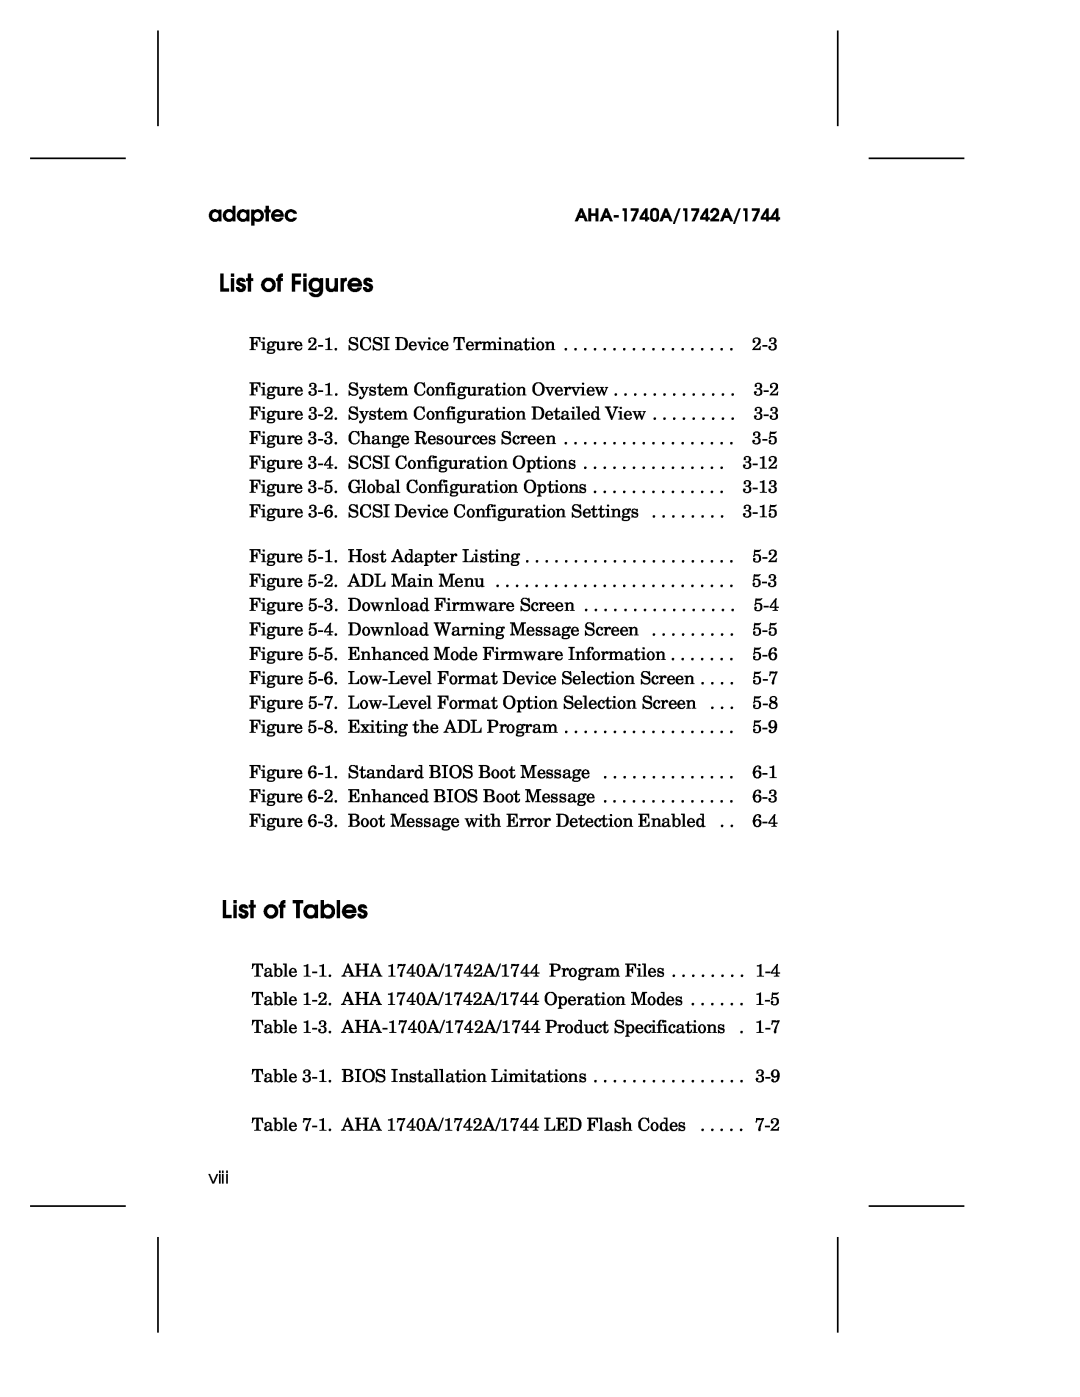 Adaptec 1742A, AHA-1740A, 1744 user manual List of Figures, List of Tables, adaptec 